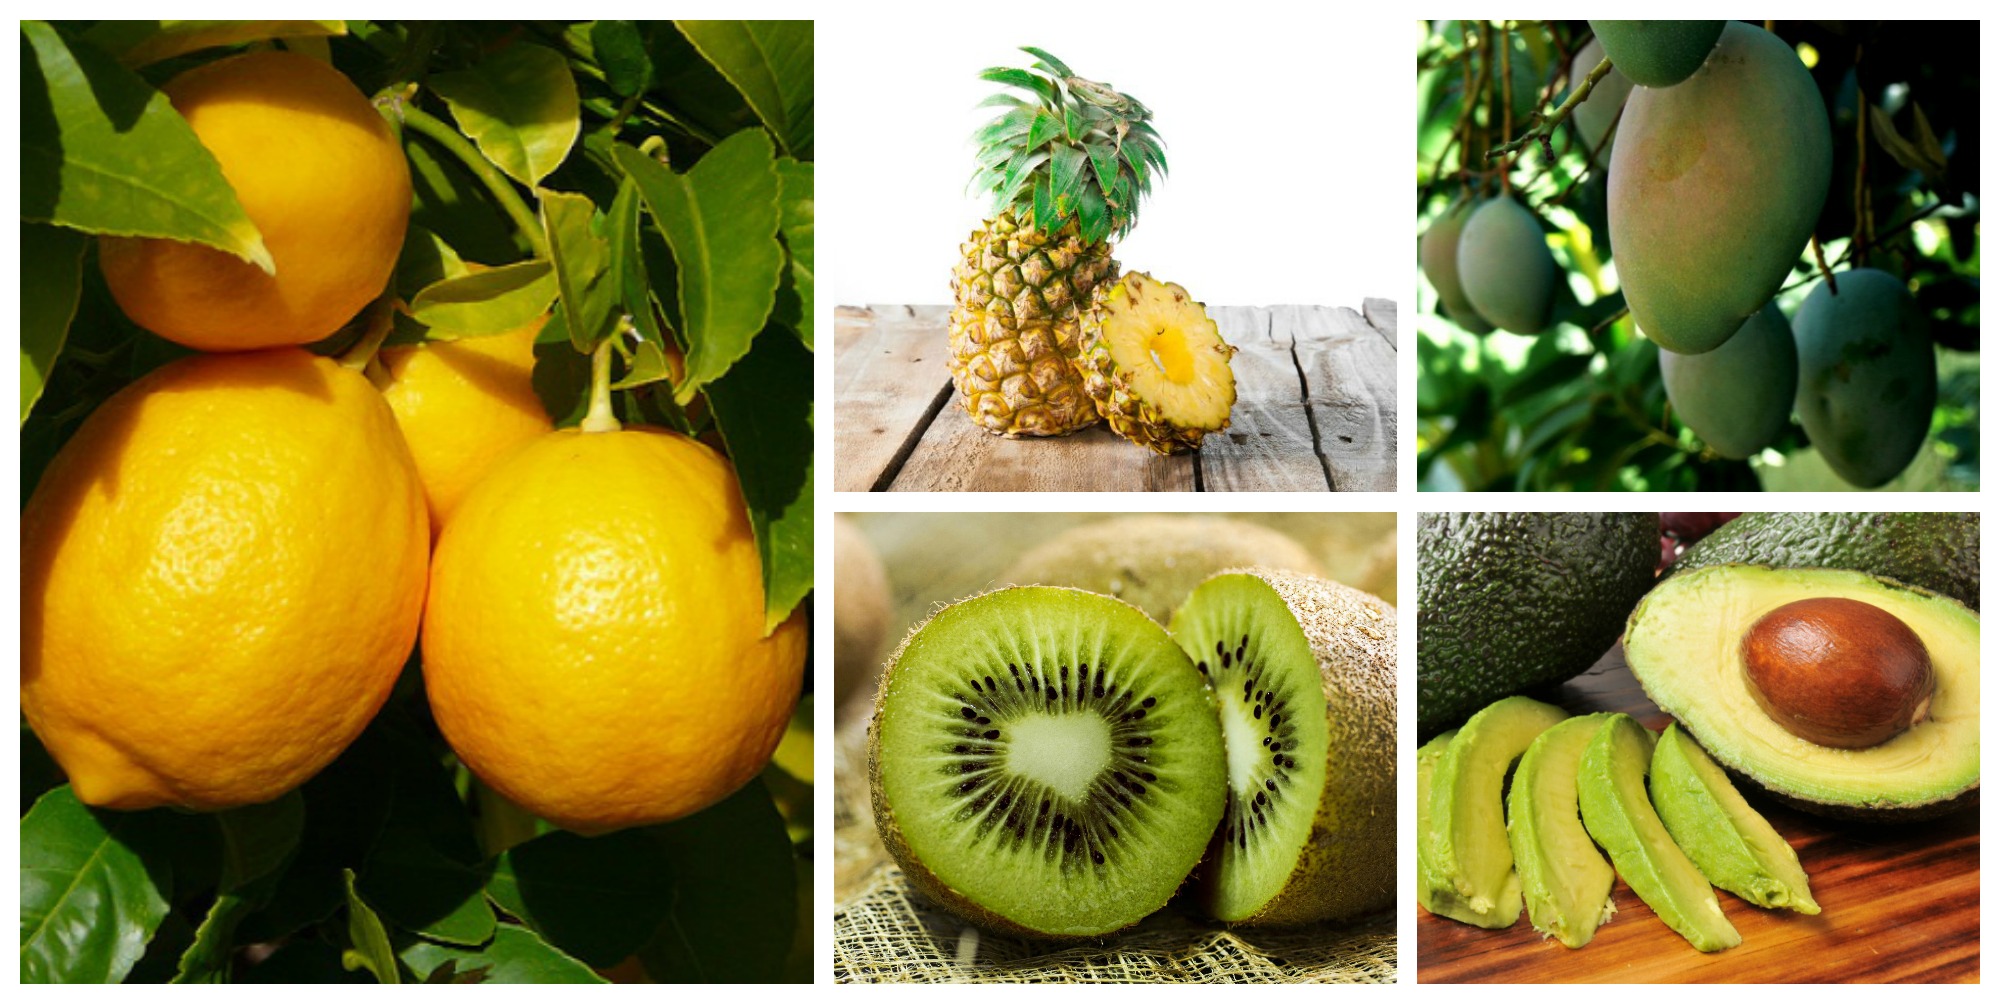 Neveljünk egzotikus gyümölcsöket otthon!